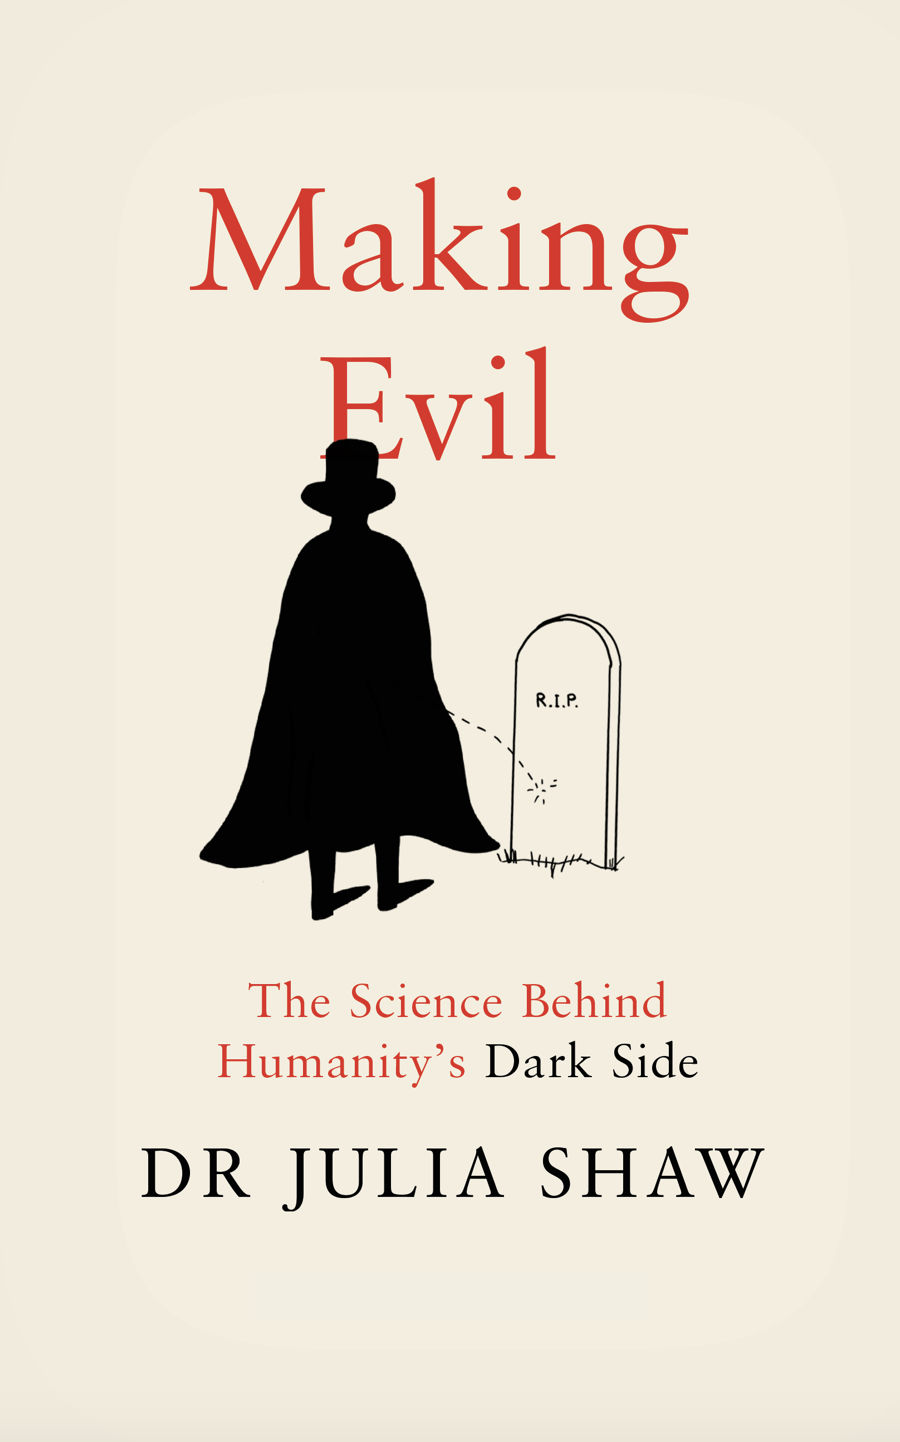 Making Evil UK Dr Julia Shaw Shrigley book.png